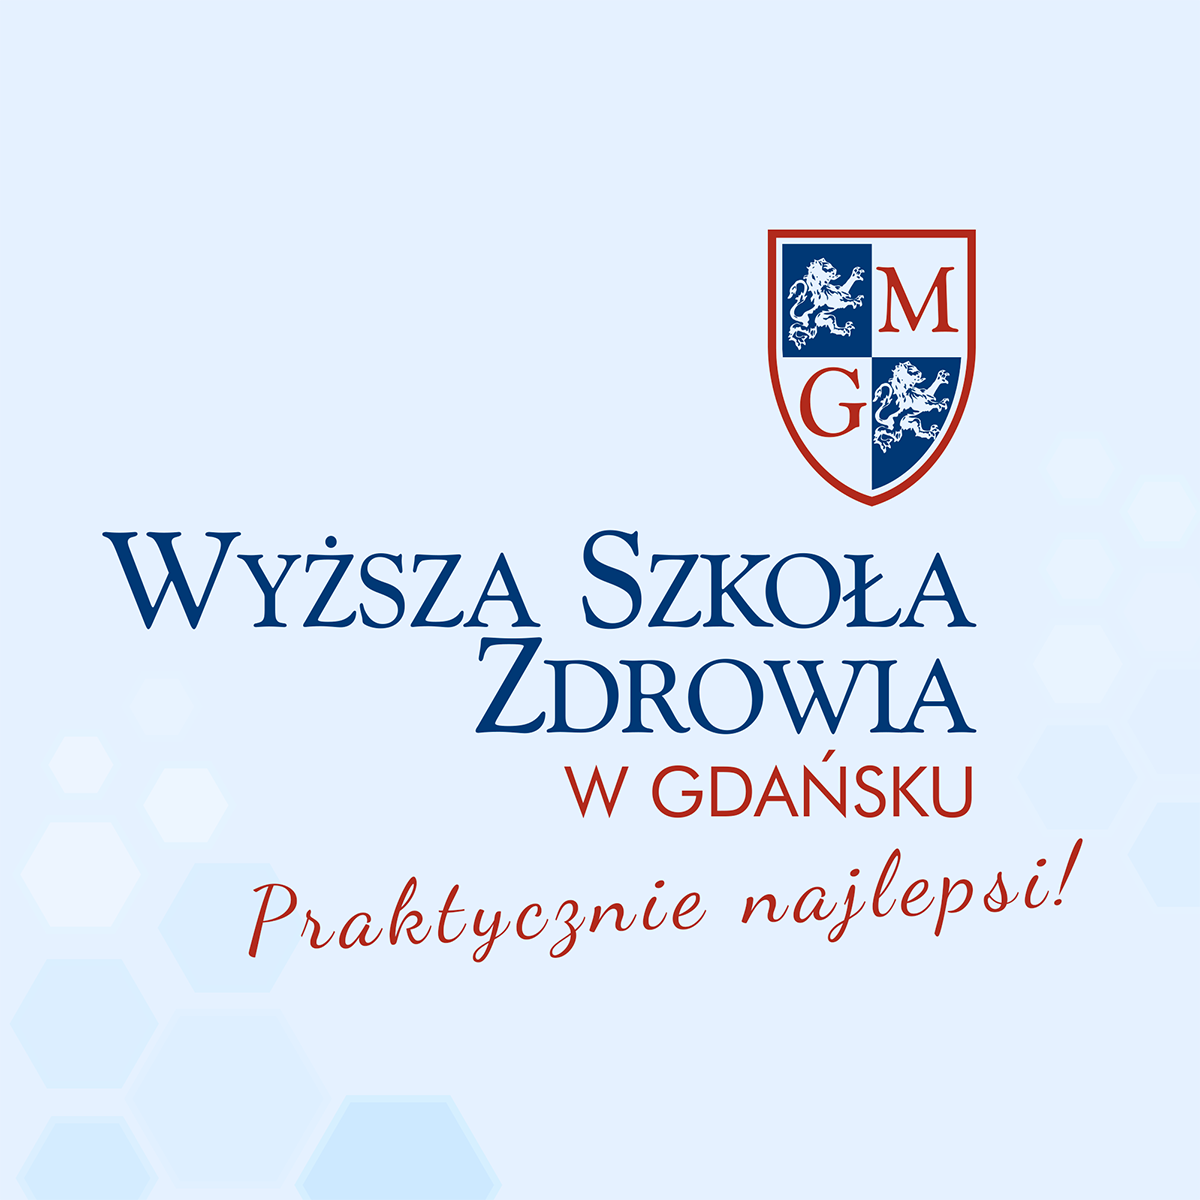 Wyższa Szkoła Zdrowia w Gdańsku